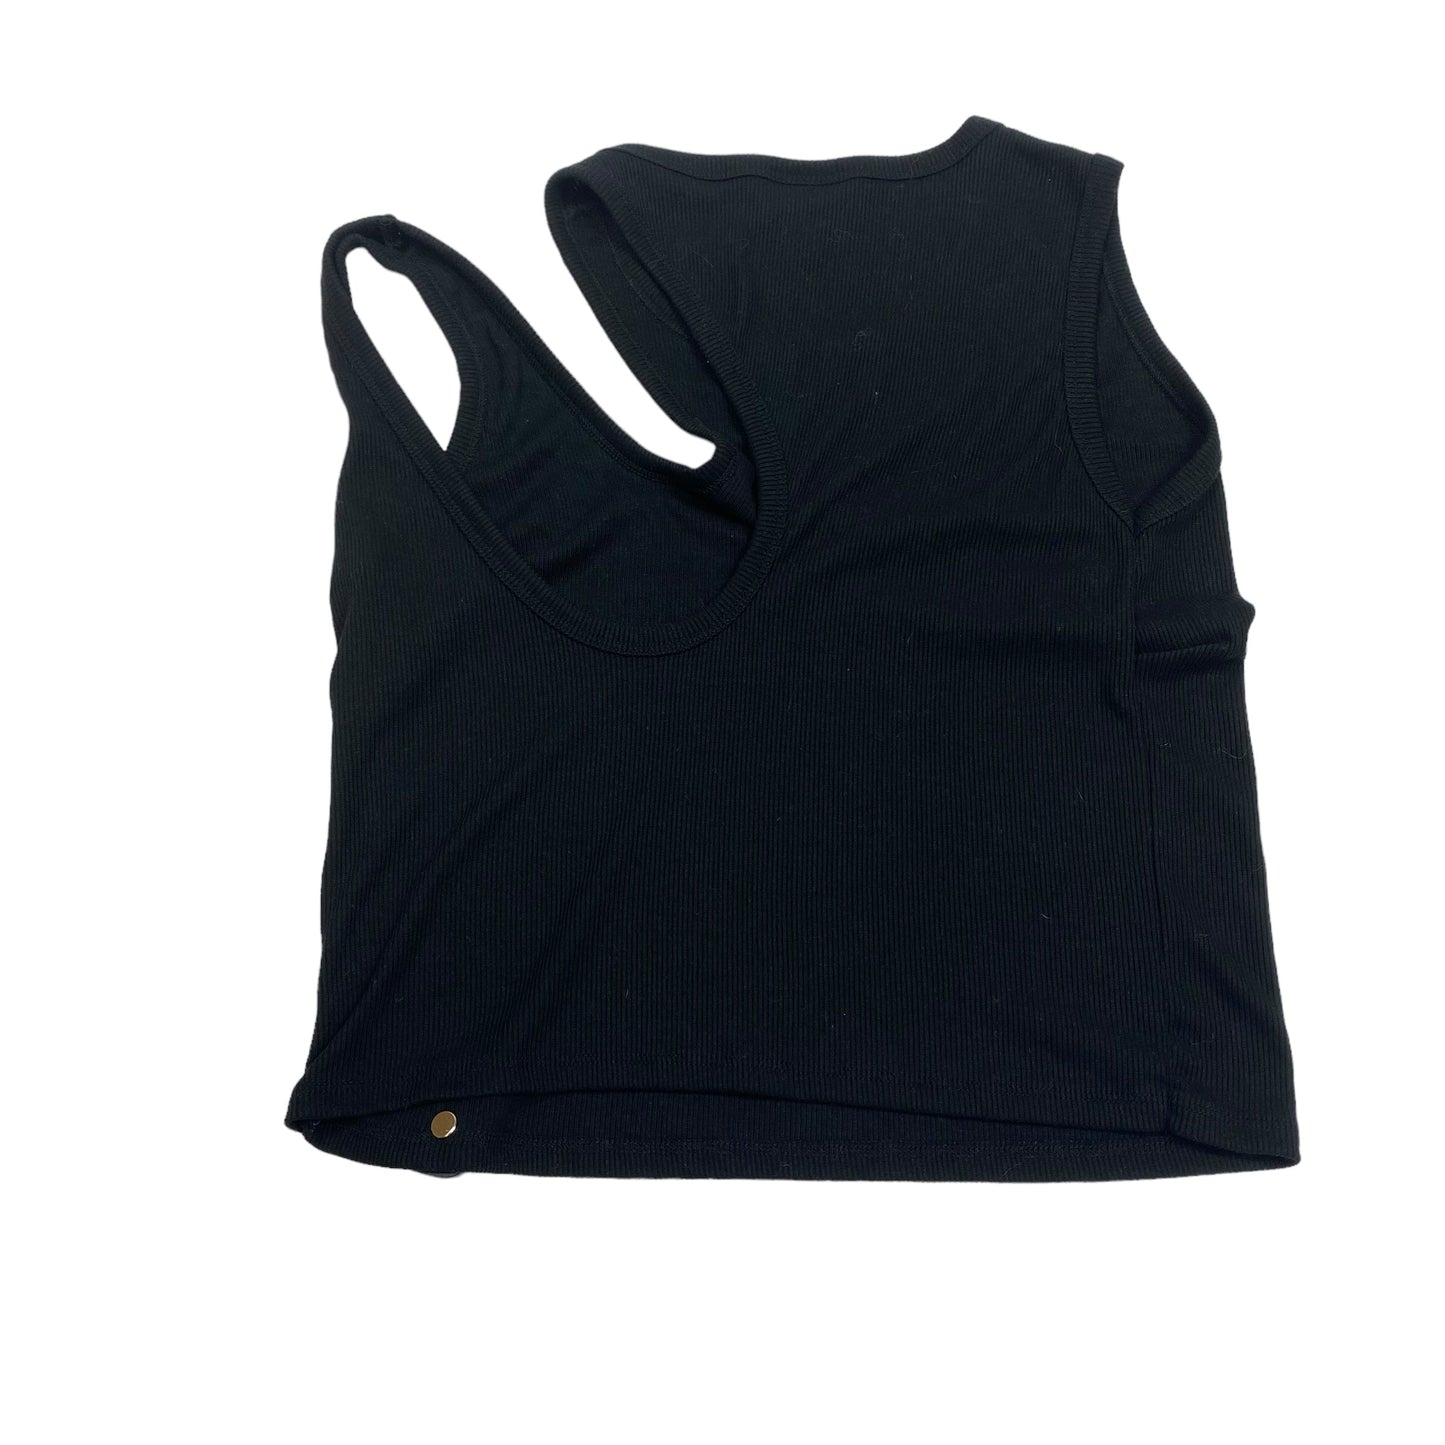 Black Top Sleeveless Target-designer, Size 2x